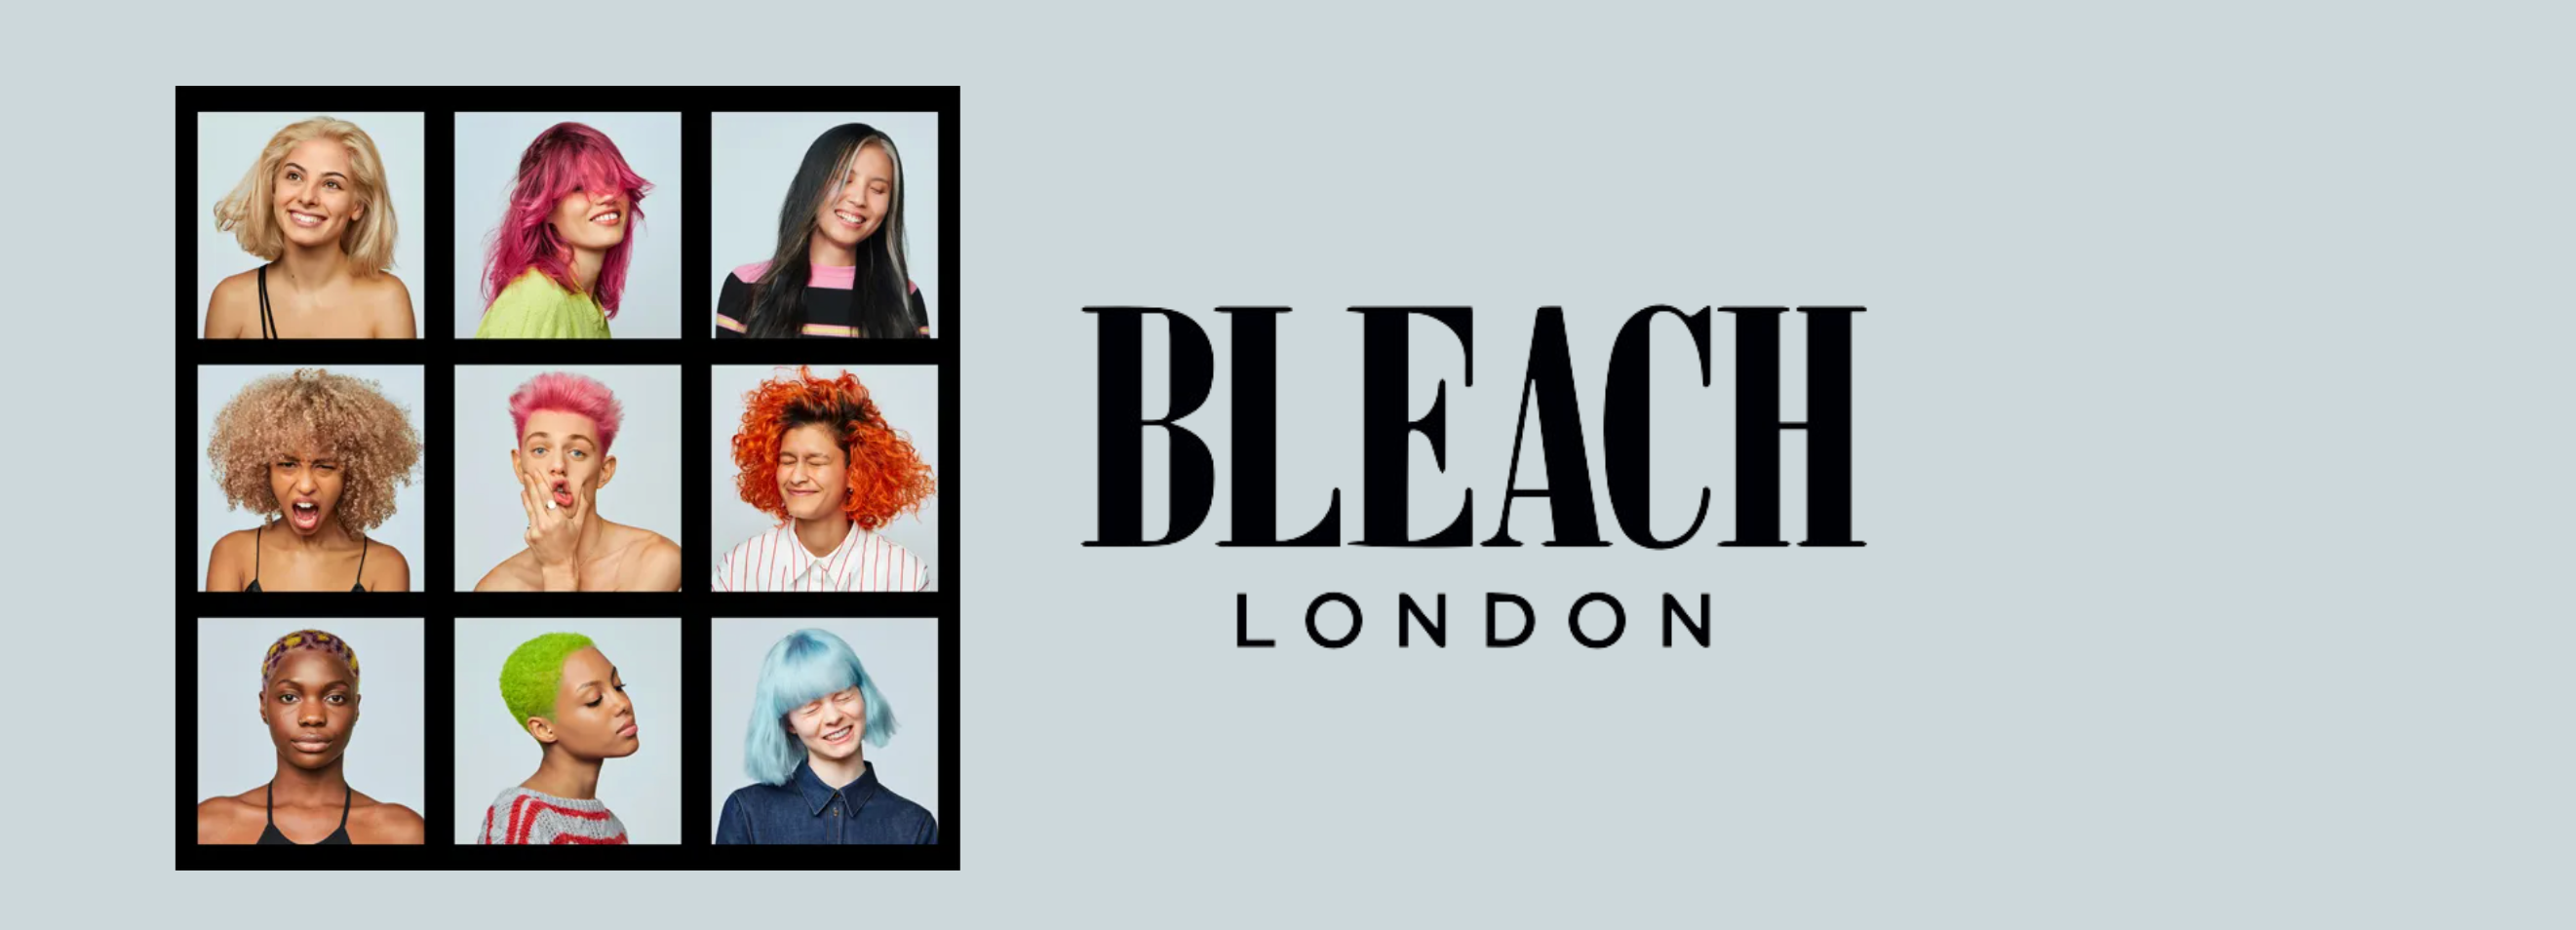 Bleach London